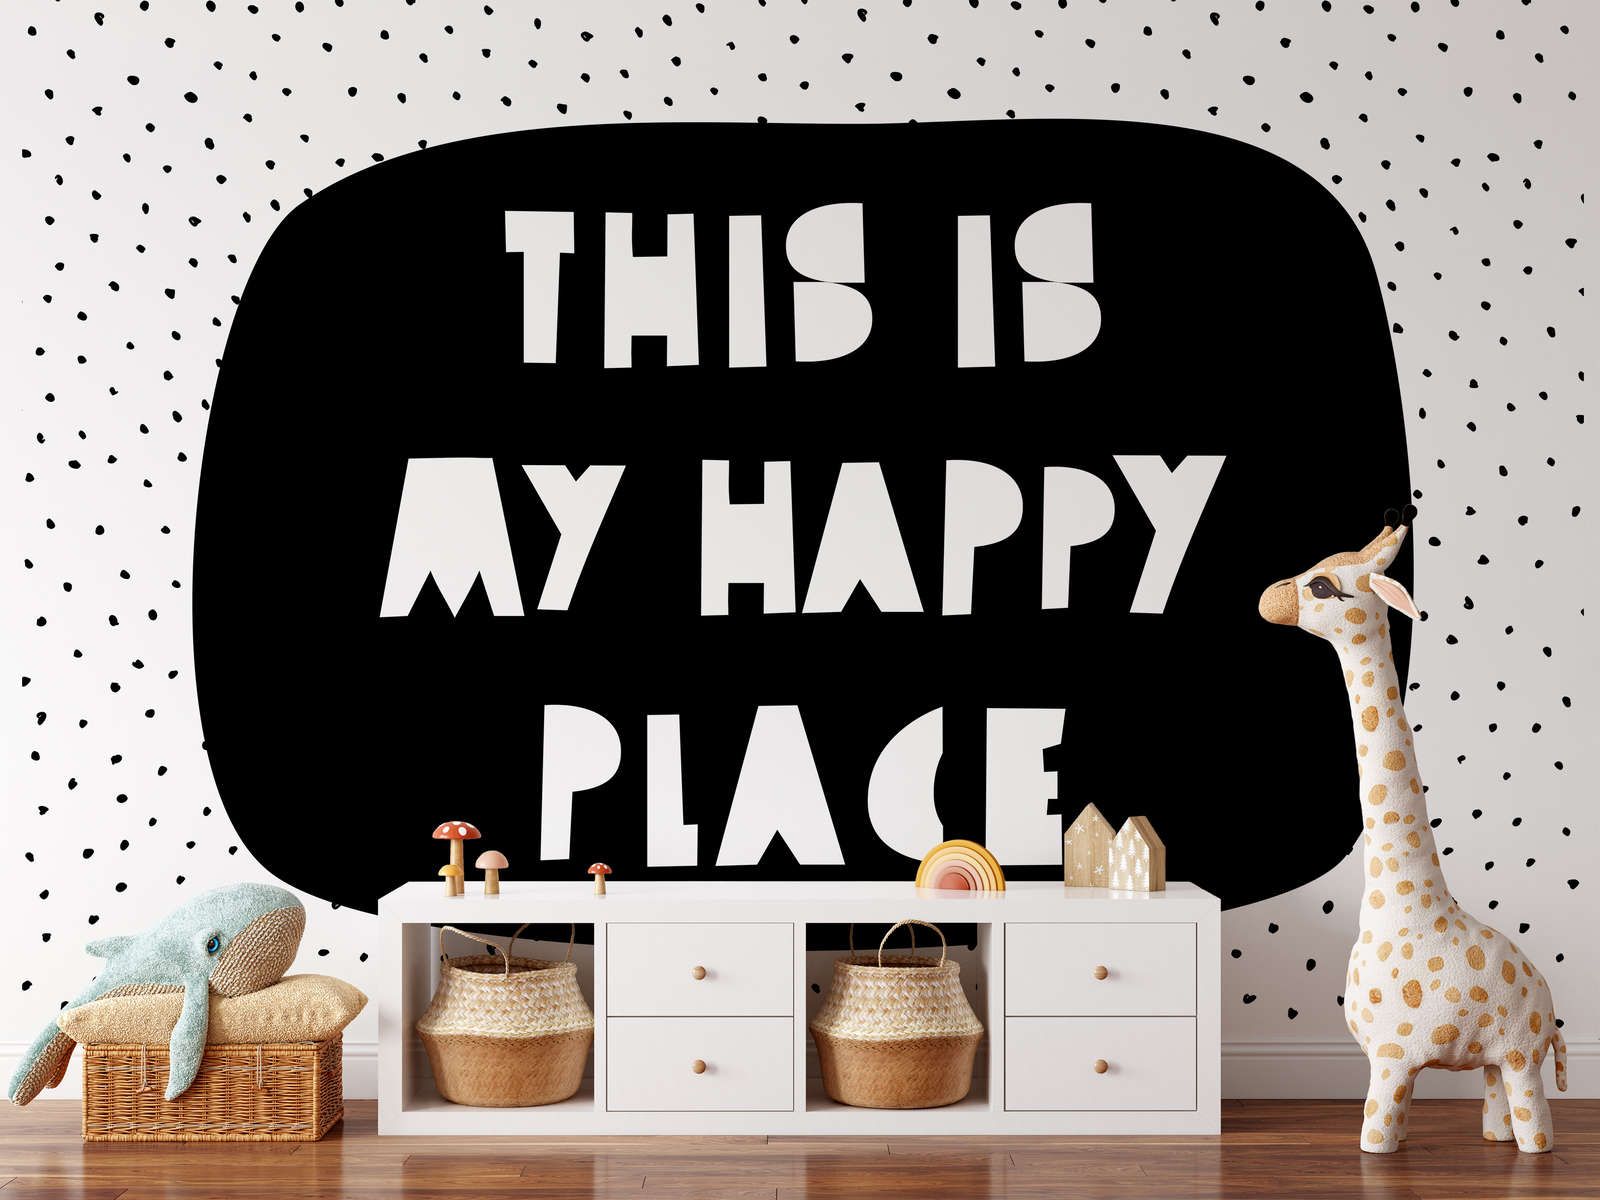             Digital behang voor kinderkamer met opschrift "This is my happy place" - Strukturenvlies
        